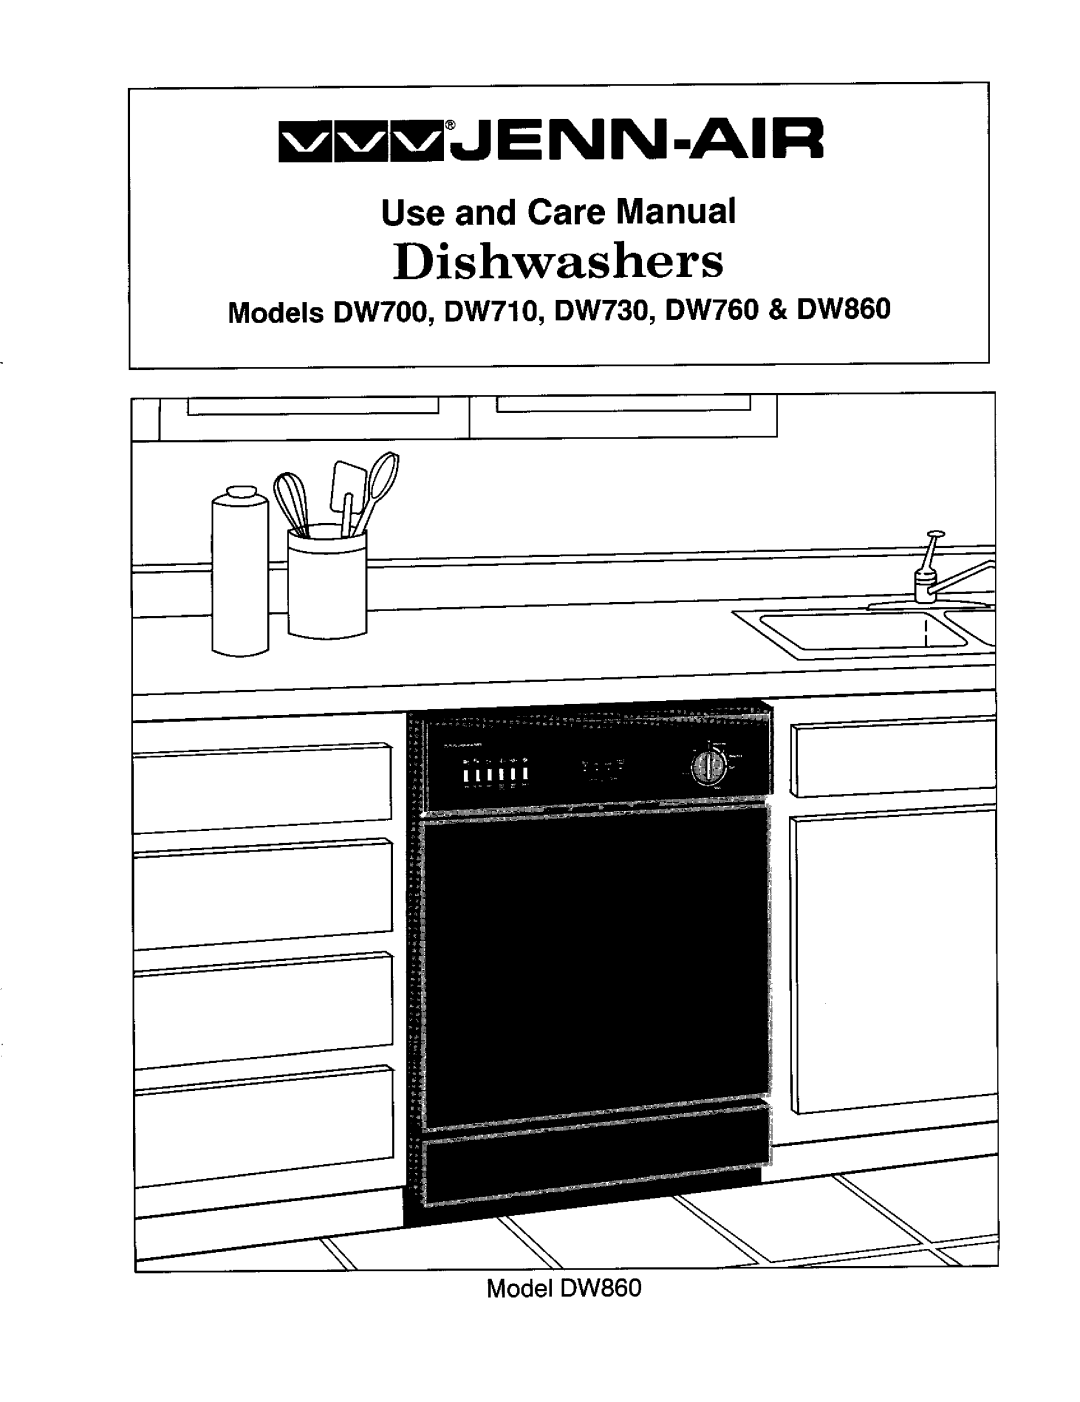 Jenn-Air manual mWWJENN-AIR, Dishwashers, Use and Care Manual, Models DW700, DW710, DW730, DW760 & DW860, Model DW860 